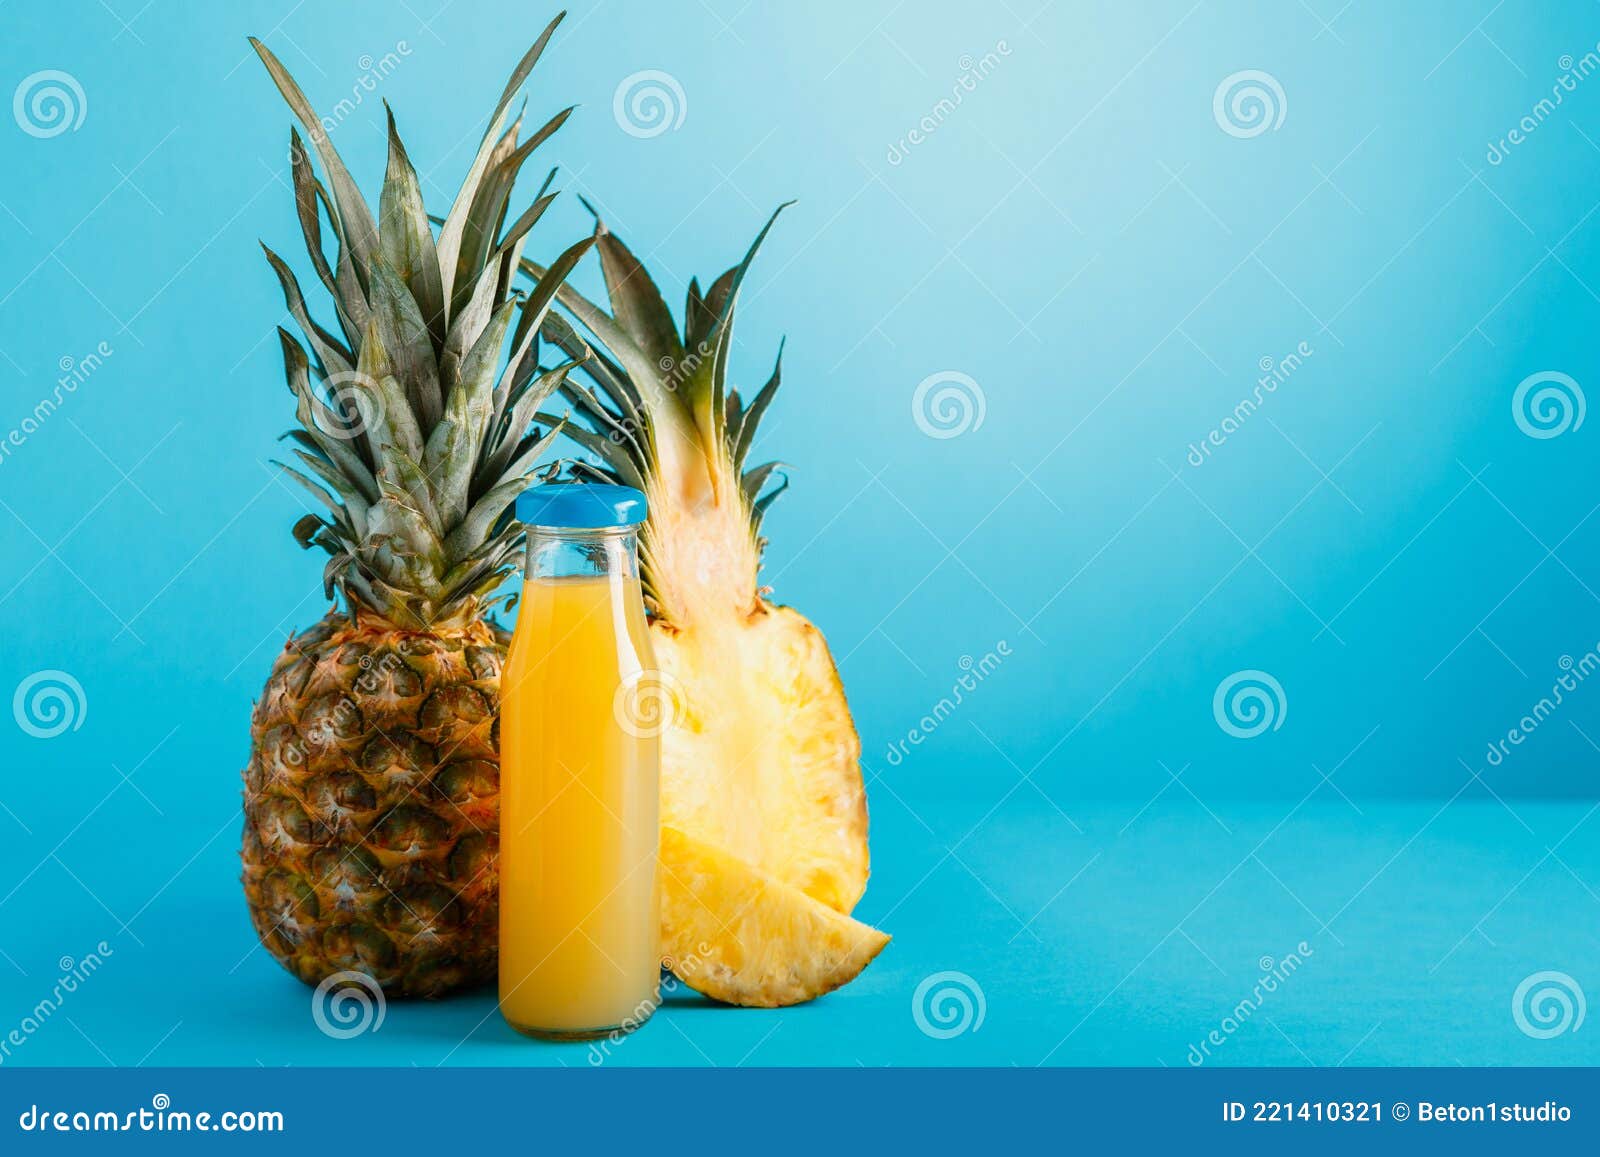 Зачем мужчинам пить ананасовый сок